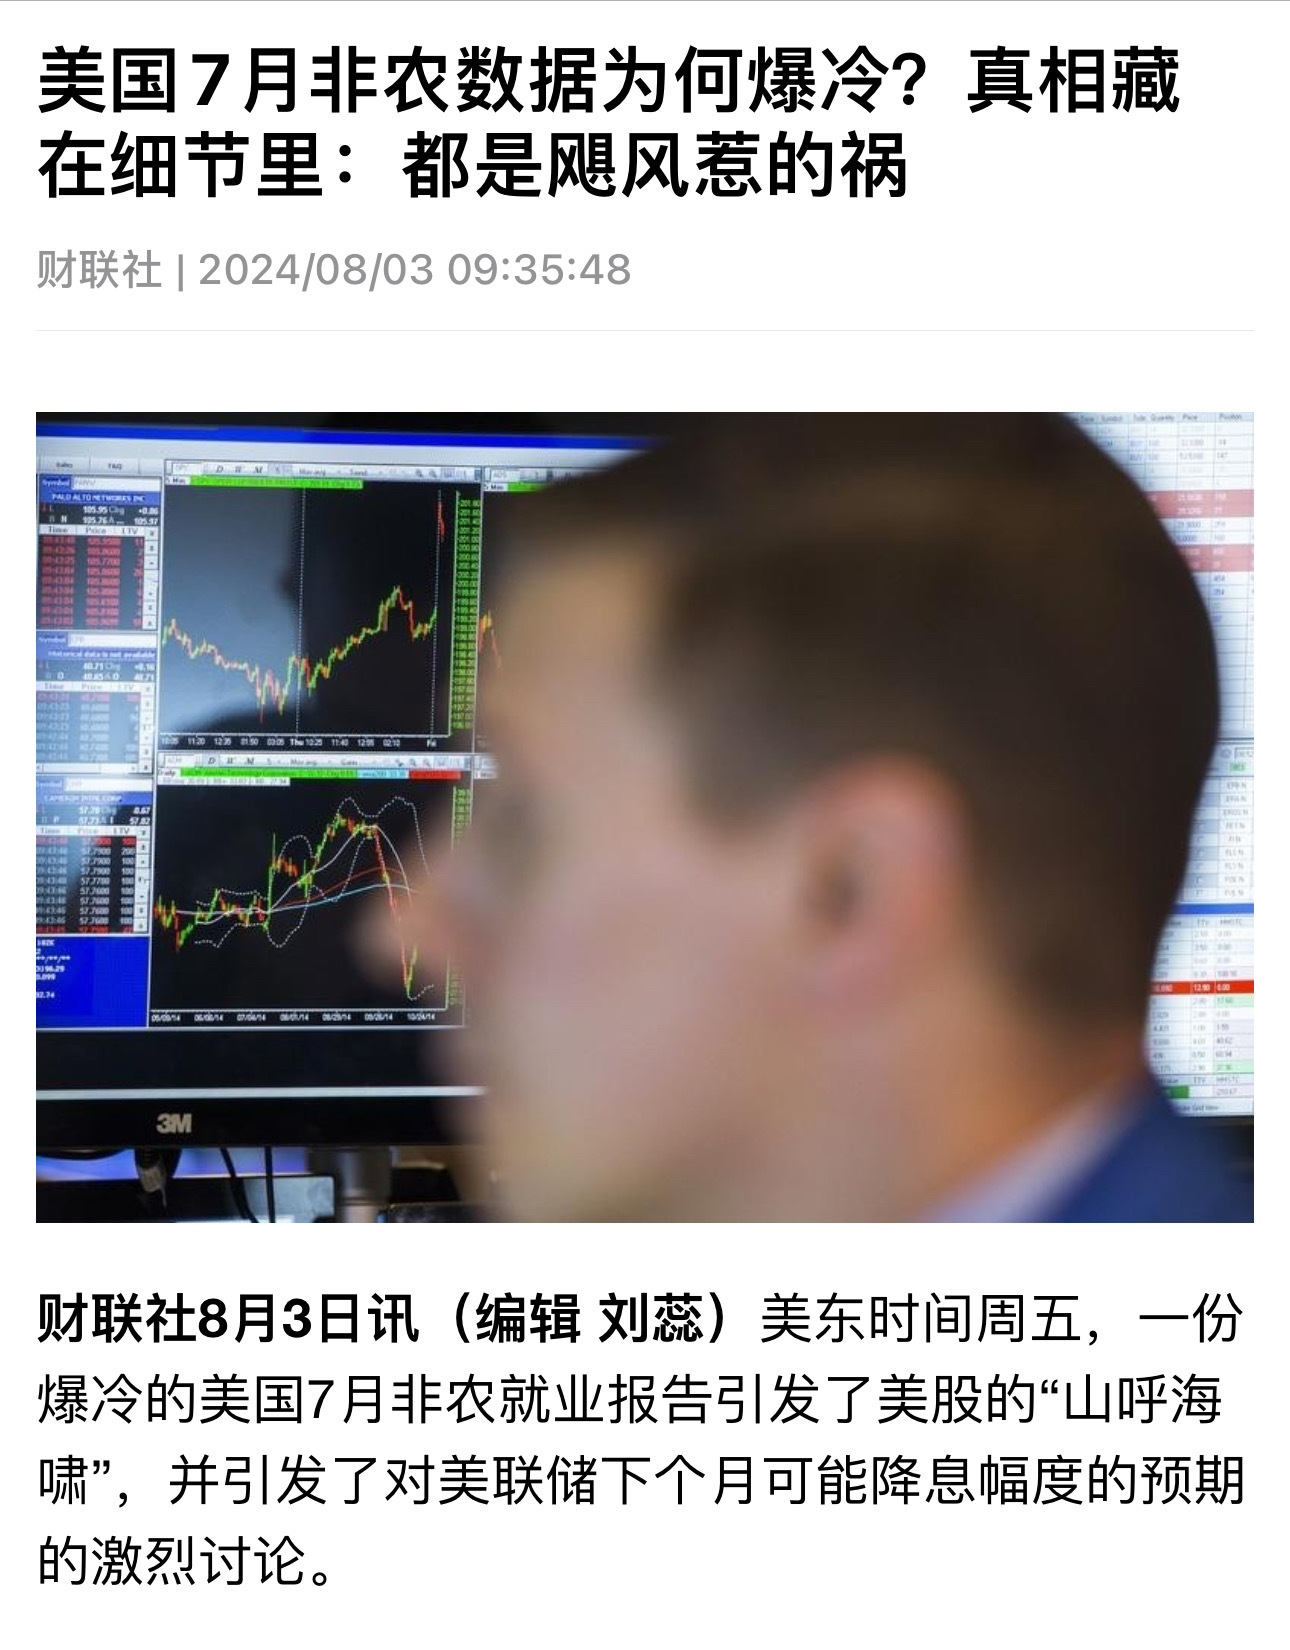 こんにちは！あなたに重要な経済ニュースをシェアします： - https://jp.investing.com/news/stock-market-news/article-2441148